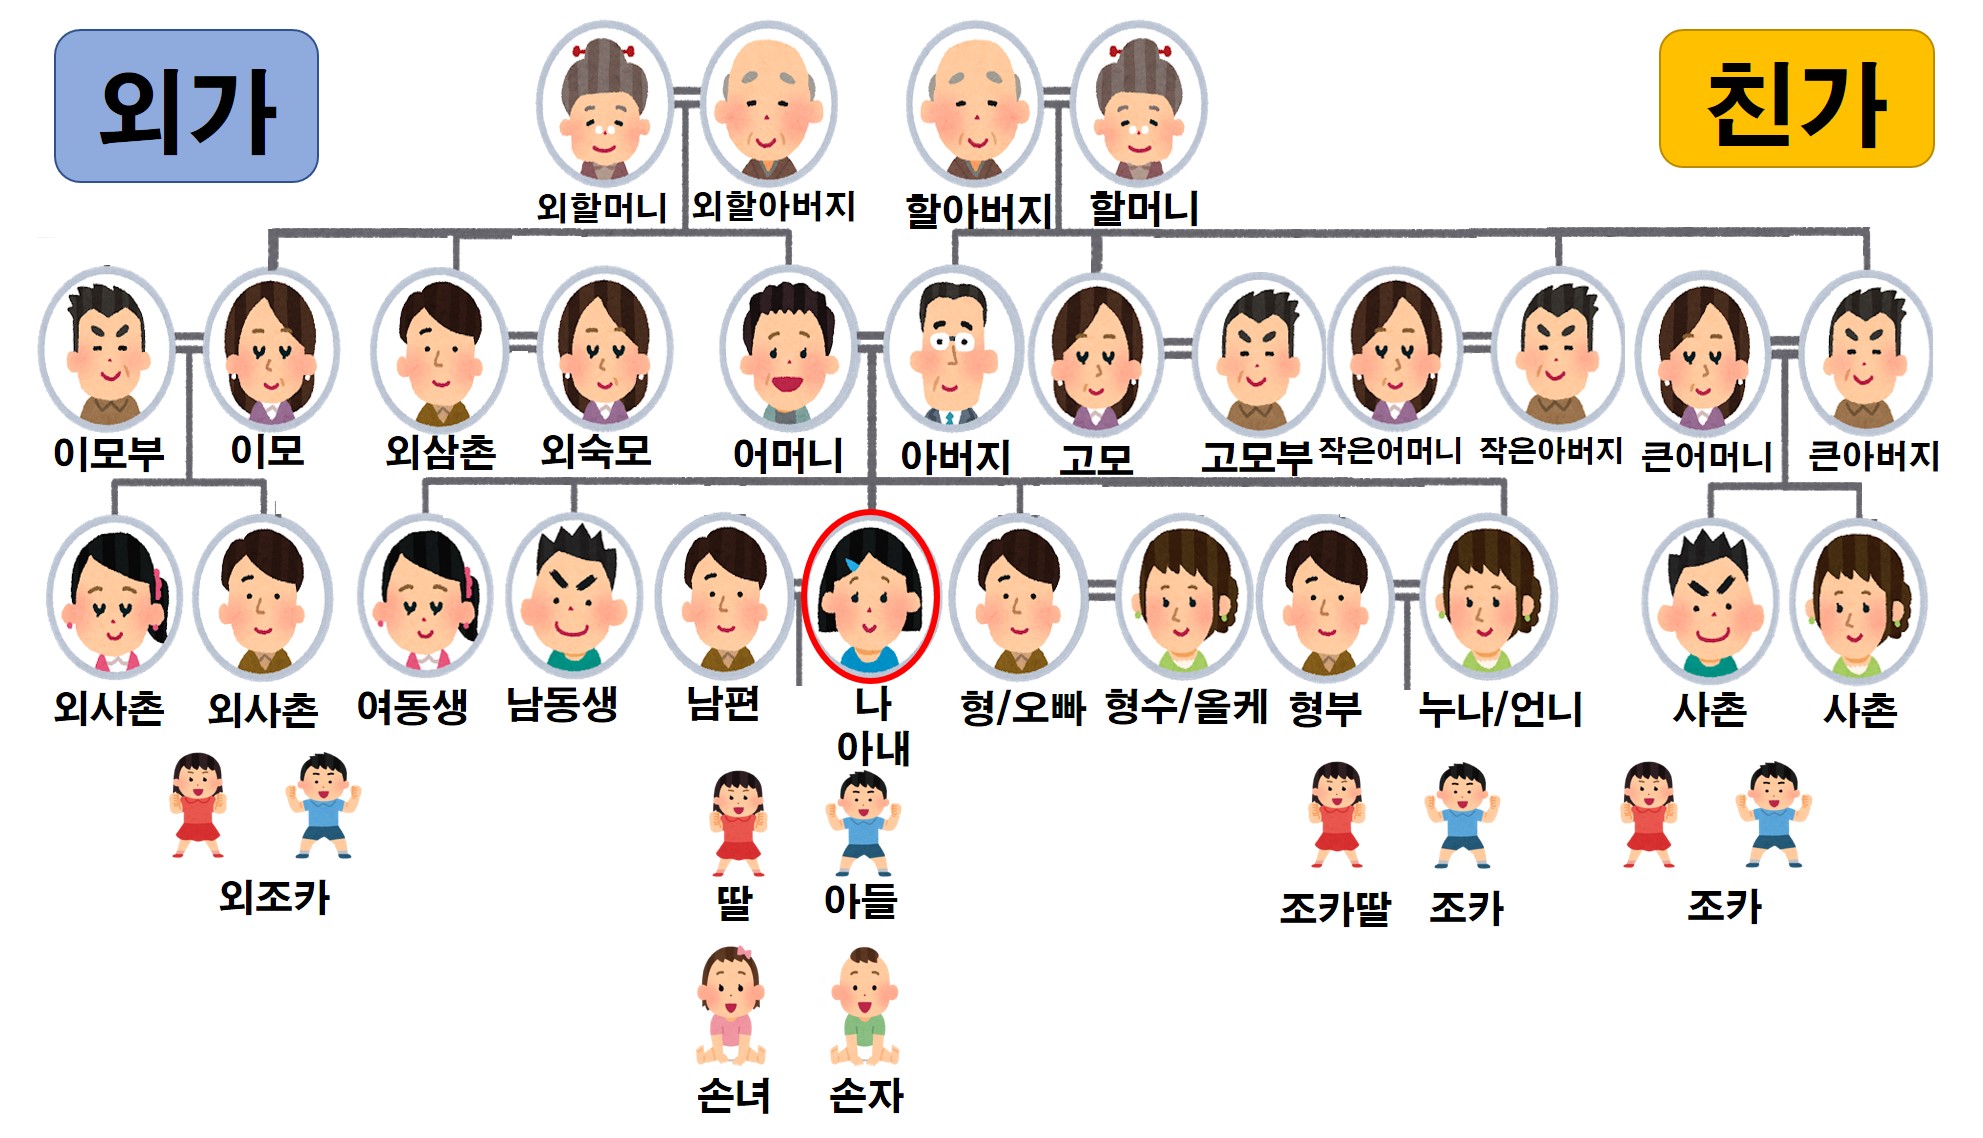 韓国の家族 親戚の呼び方一覧 家系図で詳しく解説 トリリンガルのトミ 韓国語講座 無料なのに有料以上